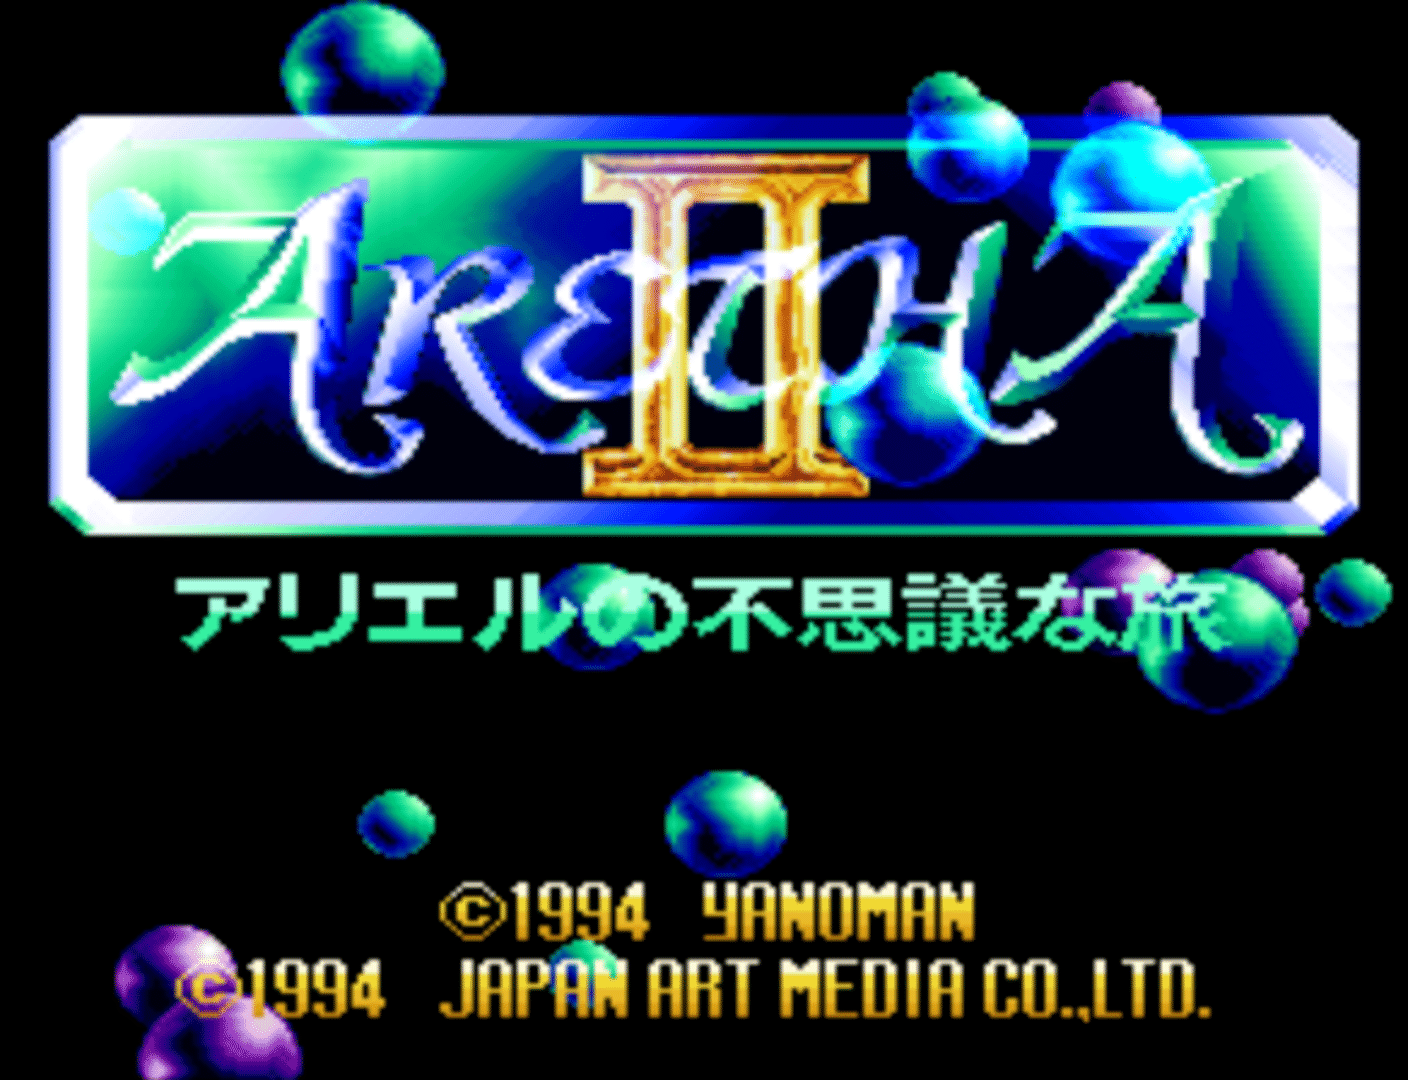 Aretha II: Ariel no Fushigi na Tabi screenshot